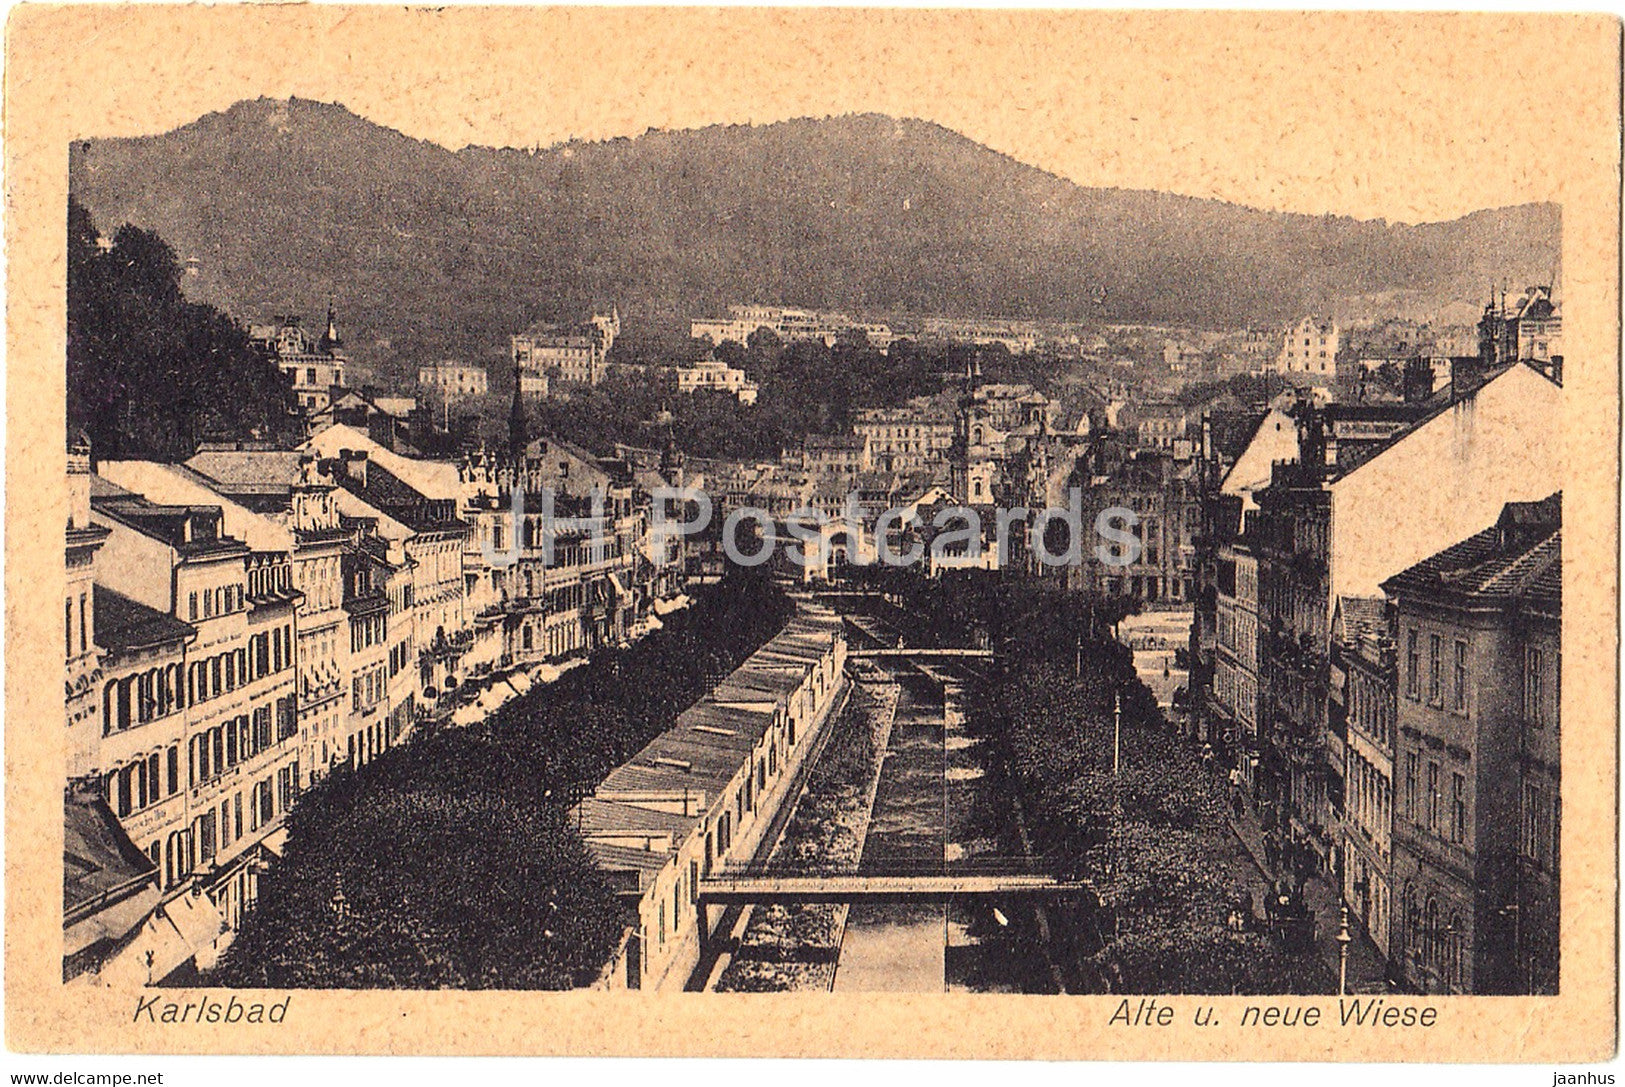 Karlovy Vary - Karlsbad - Alte u Neue Wiese - 1618 - old postcard - 1924 - Czechoslovakia - Czech Republic - used - JH Postcards